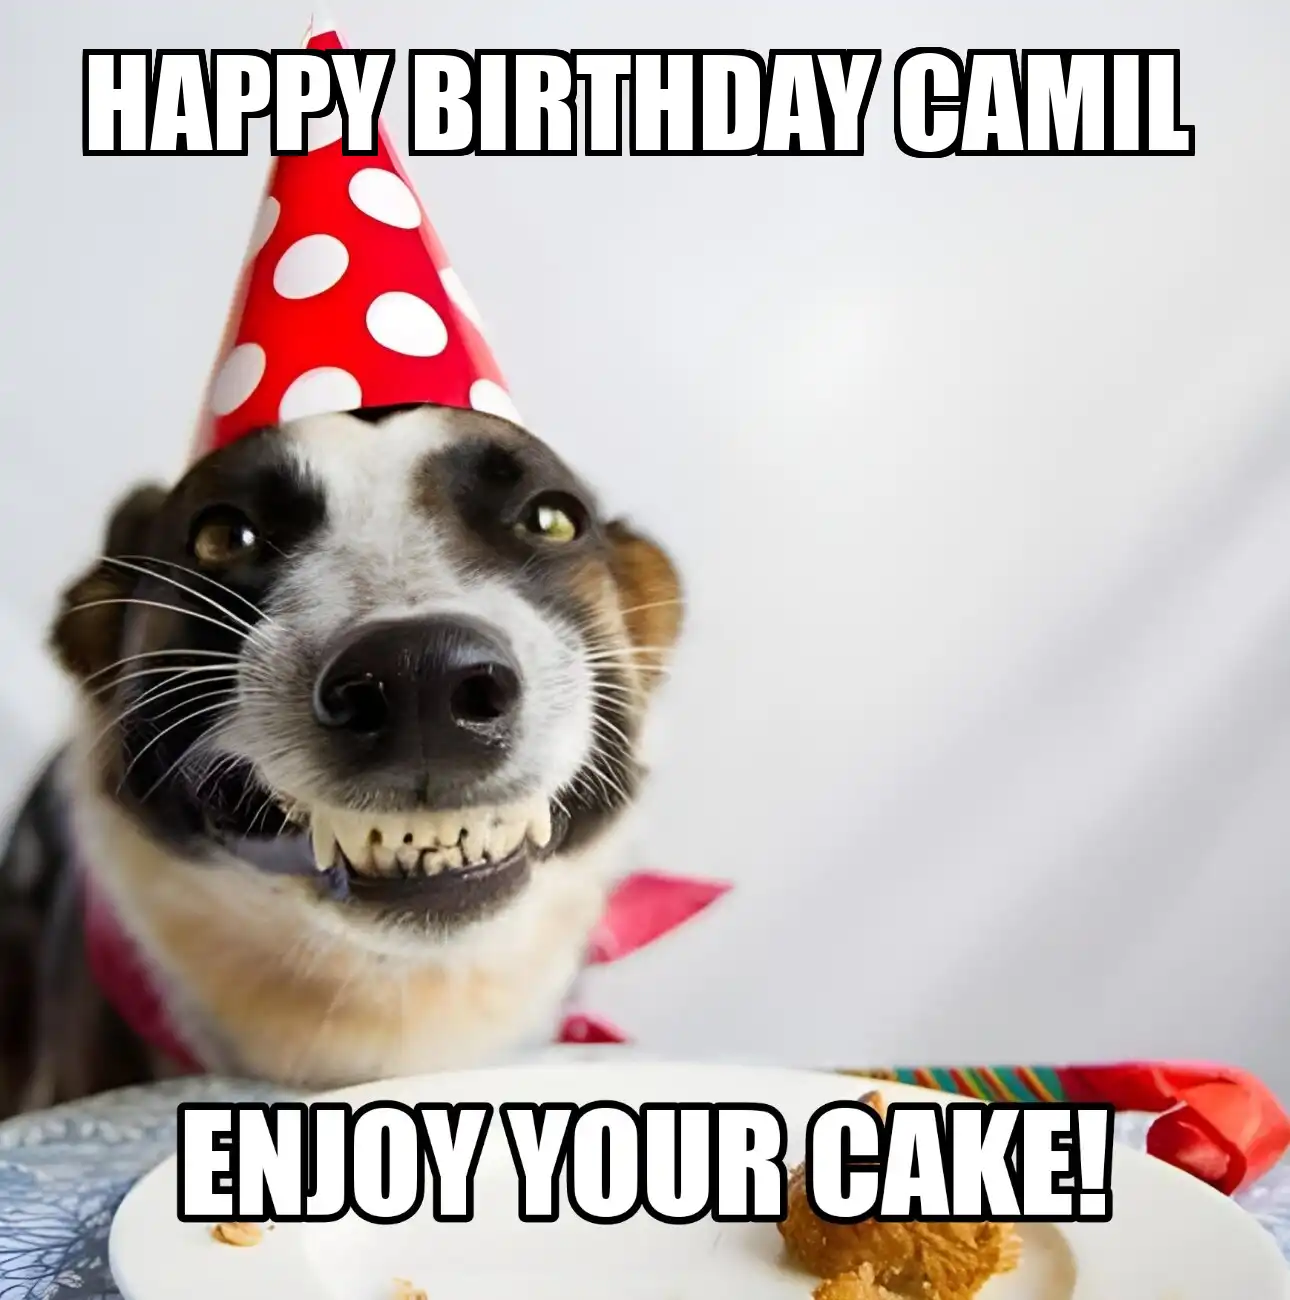 Happy Birthday Camil Enjoy Your Cake Dog Meme